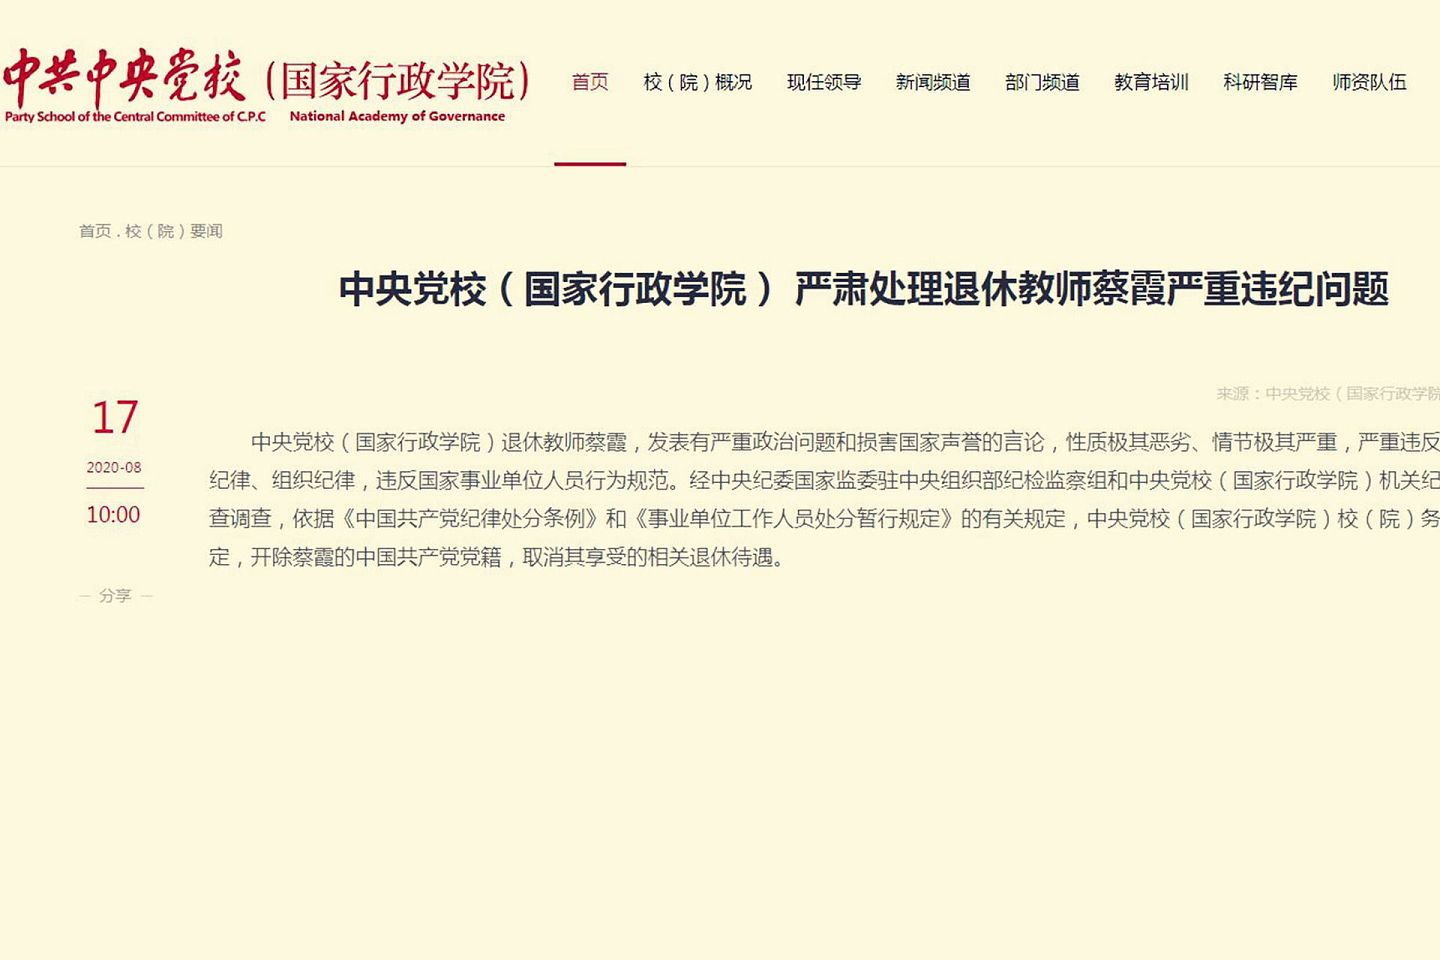 中共中央党校（国家行政学院）发布公告， 严肃处理退休教师蔡霞严重违纪问题。（中共中央党校官网）